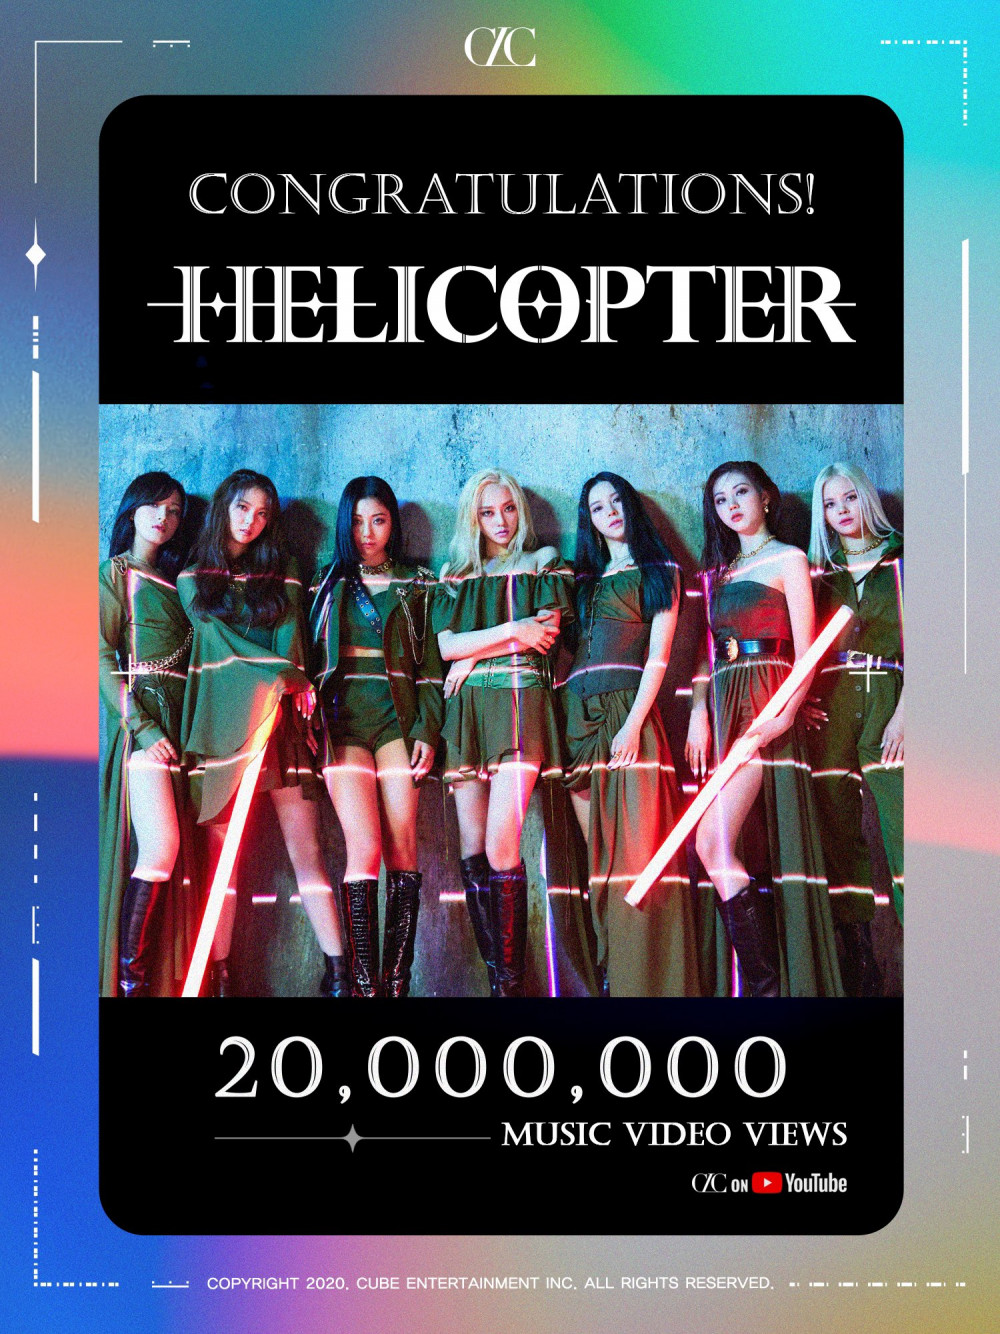 Видеоклип CLC на песню "Helicopter" набрал более 20 млн просмотров